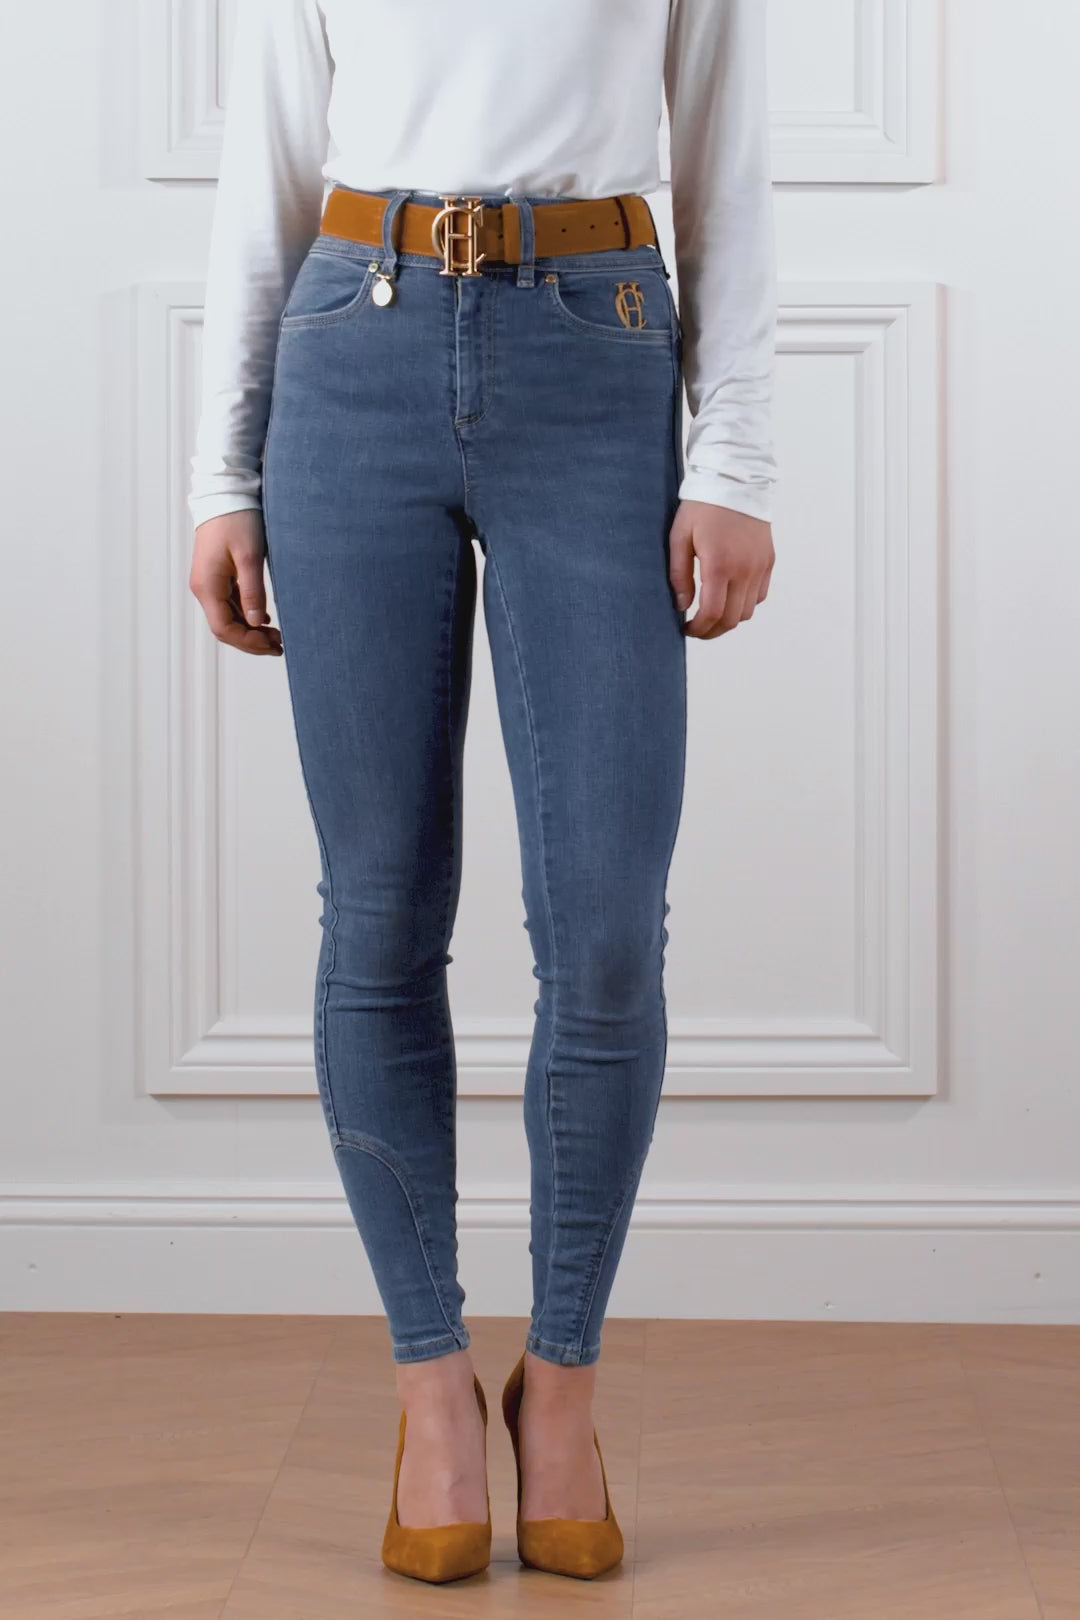 Holland Cooper Ladies Jodhpur Jeans  - Denim